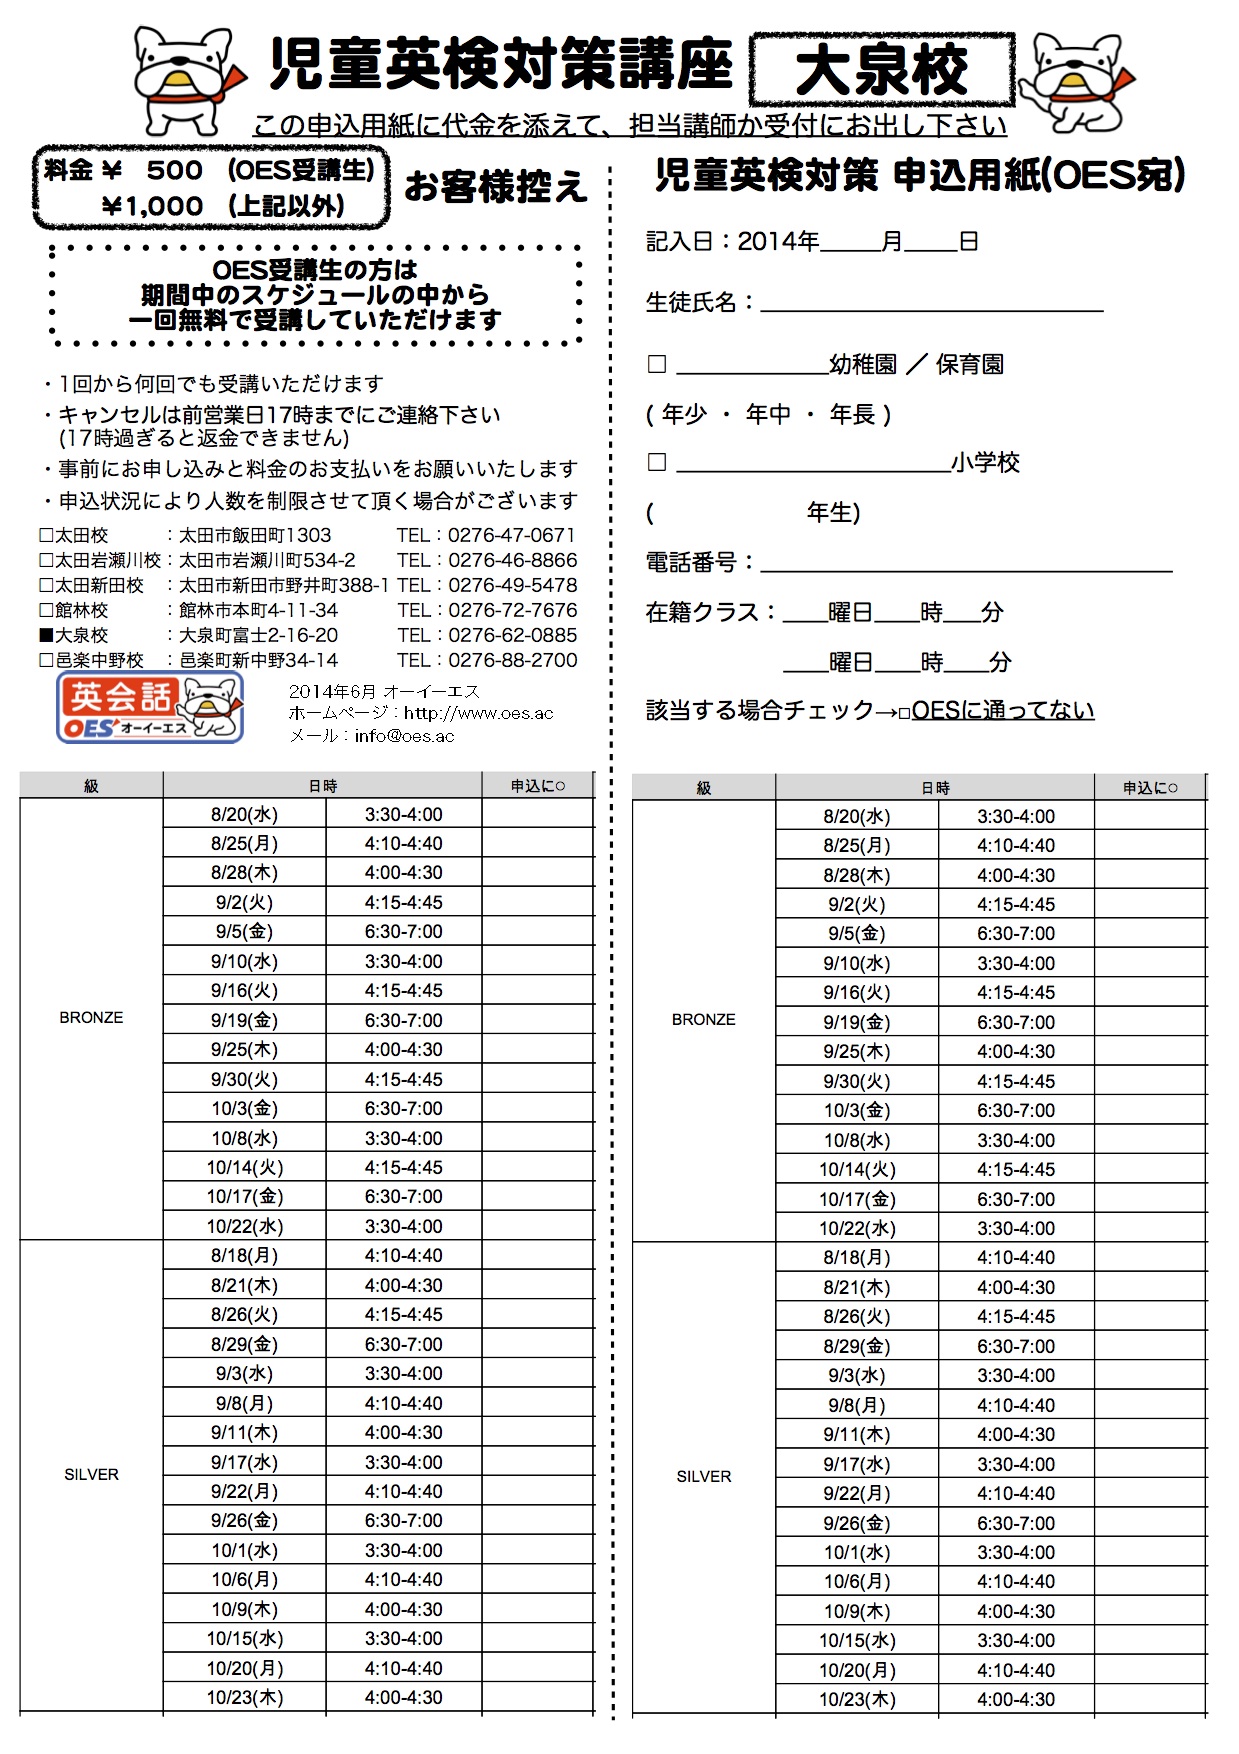 申込用紙(BRONZE-SILVER) 2014-2 大泉校